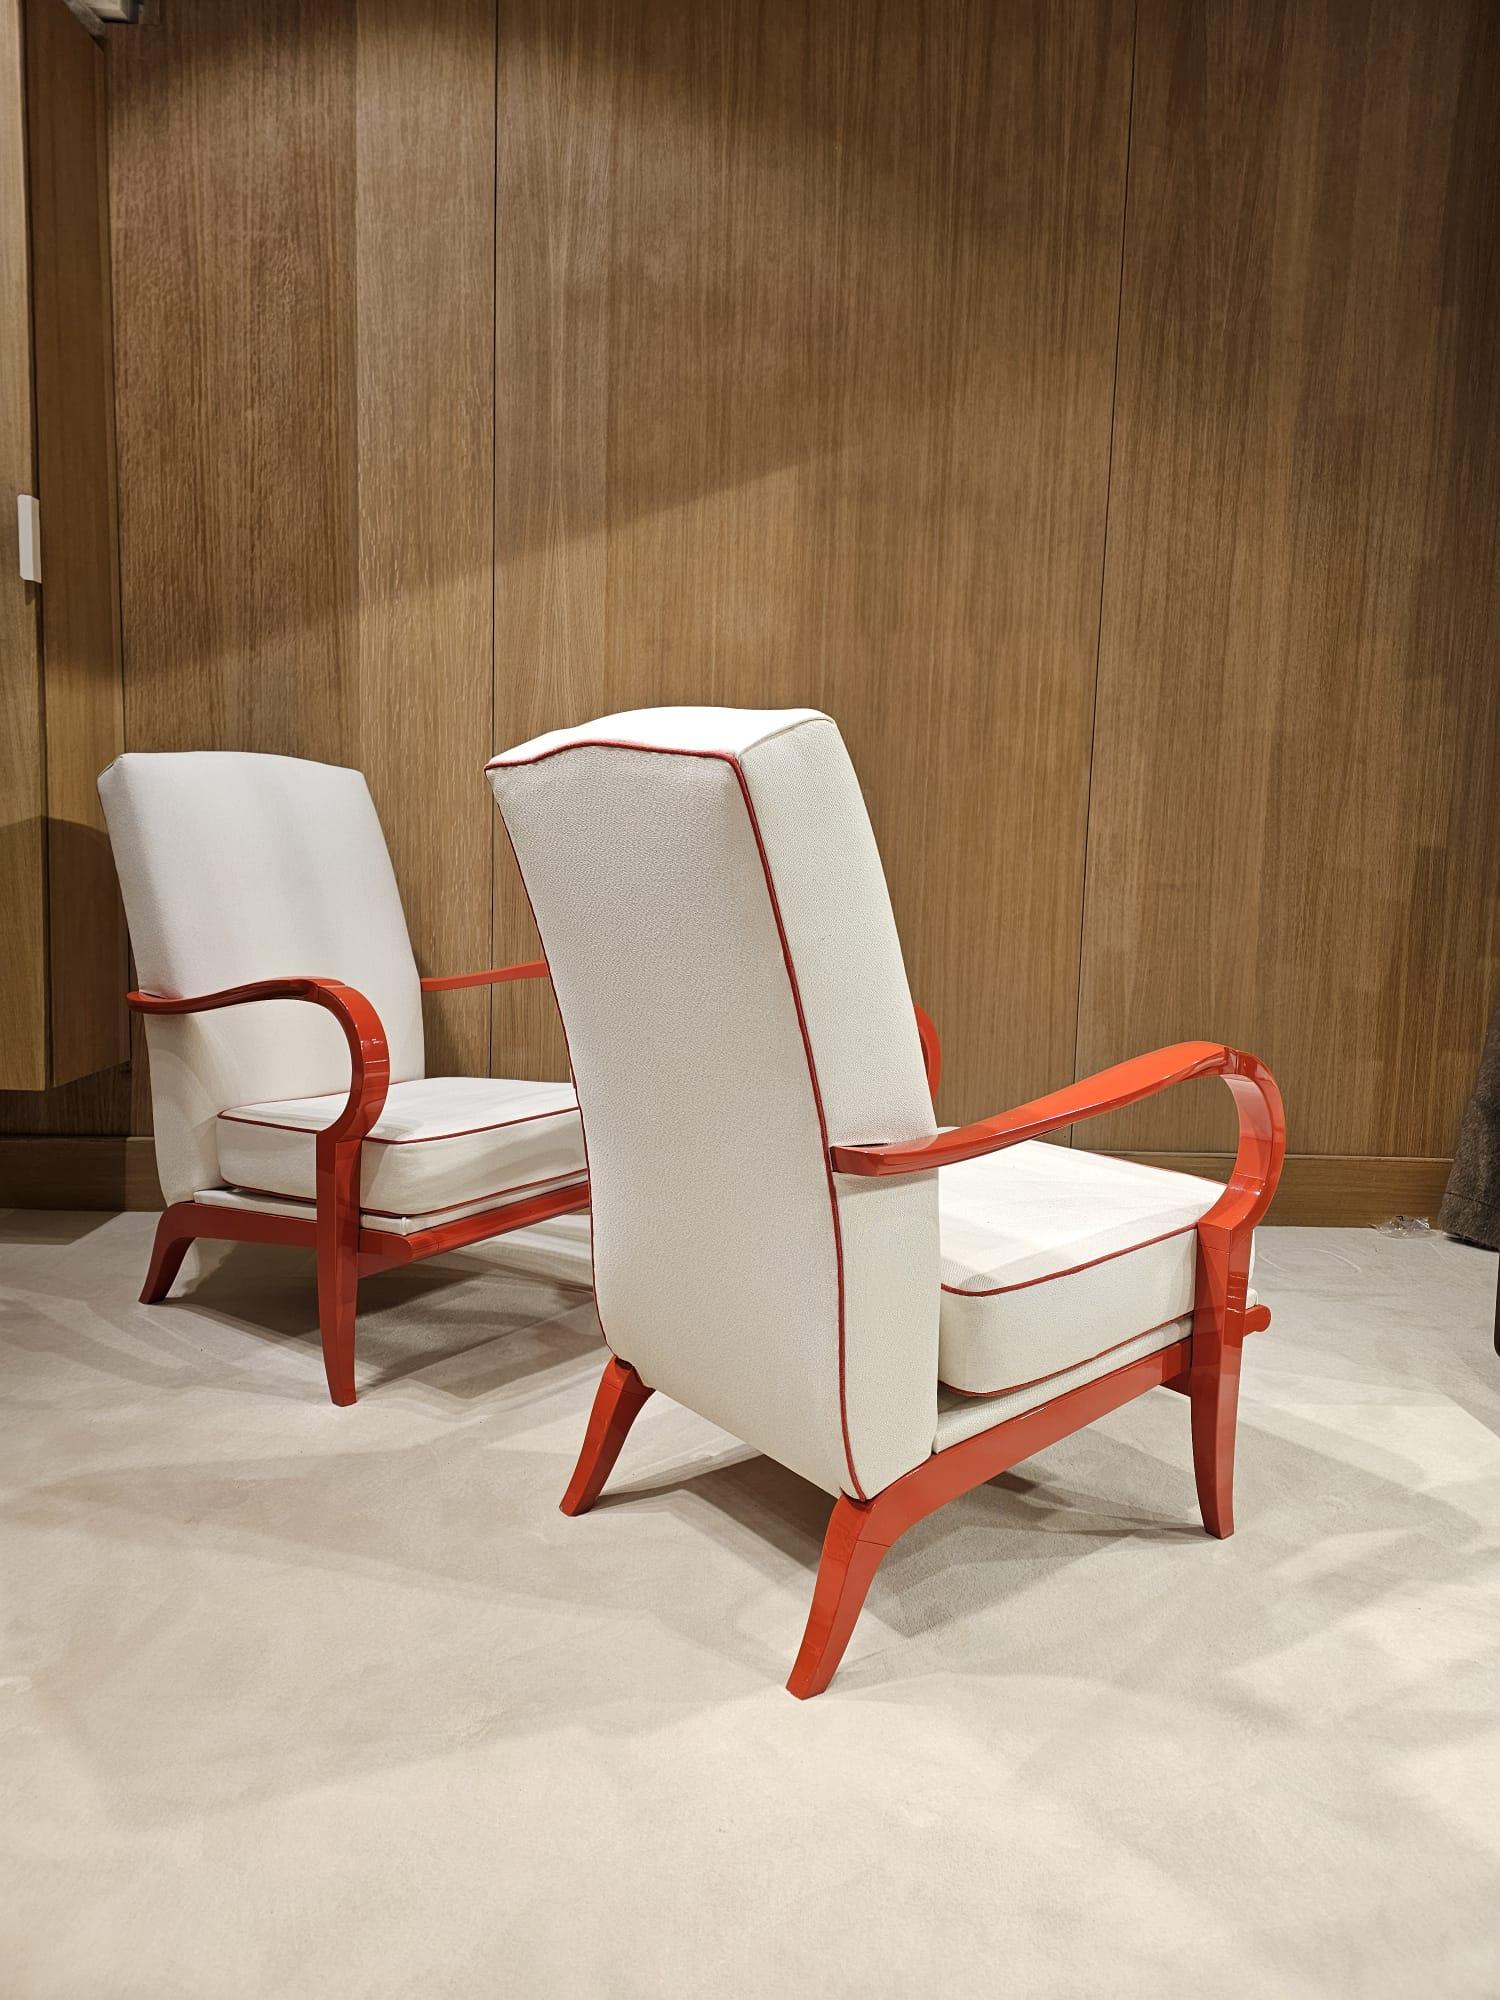 Très jolie paire de fauteuils des années 30 laquée rouge orangé 